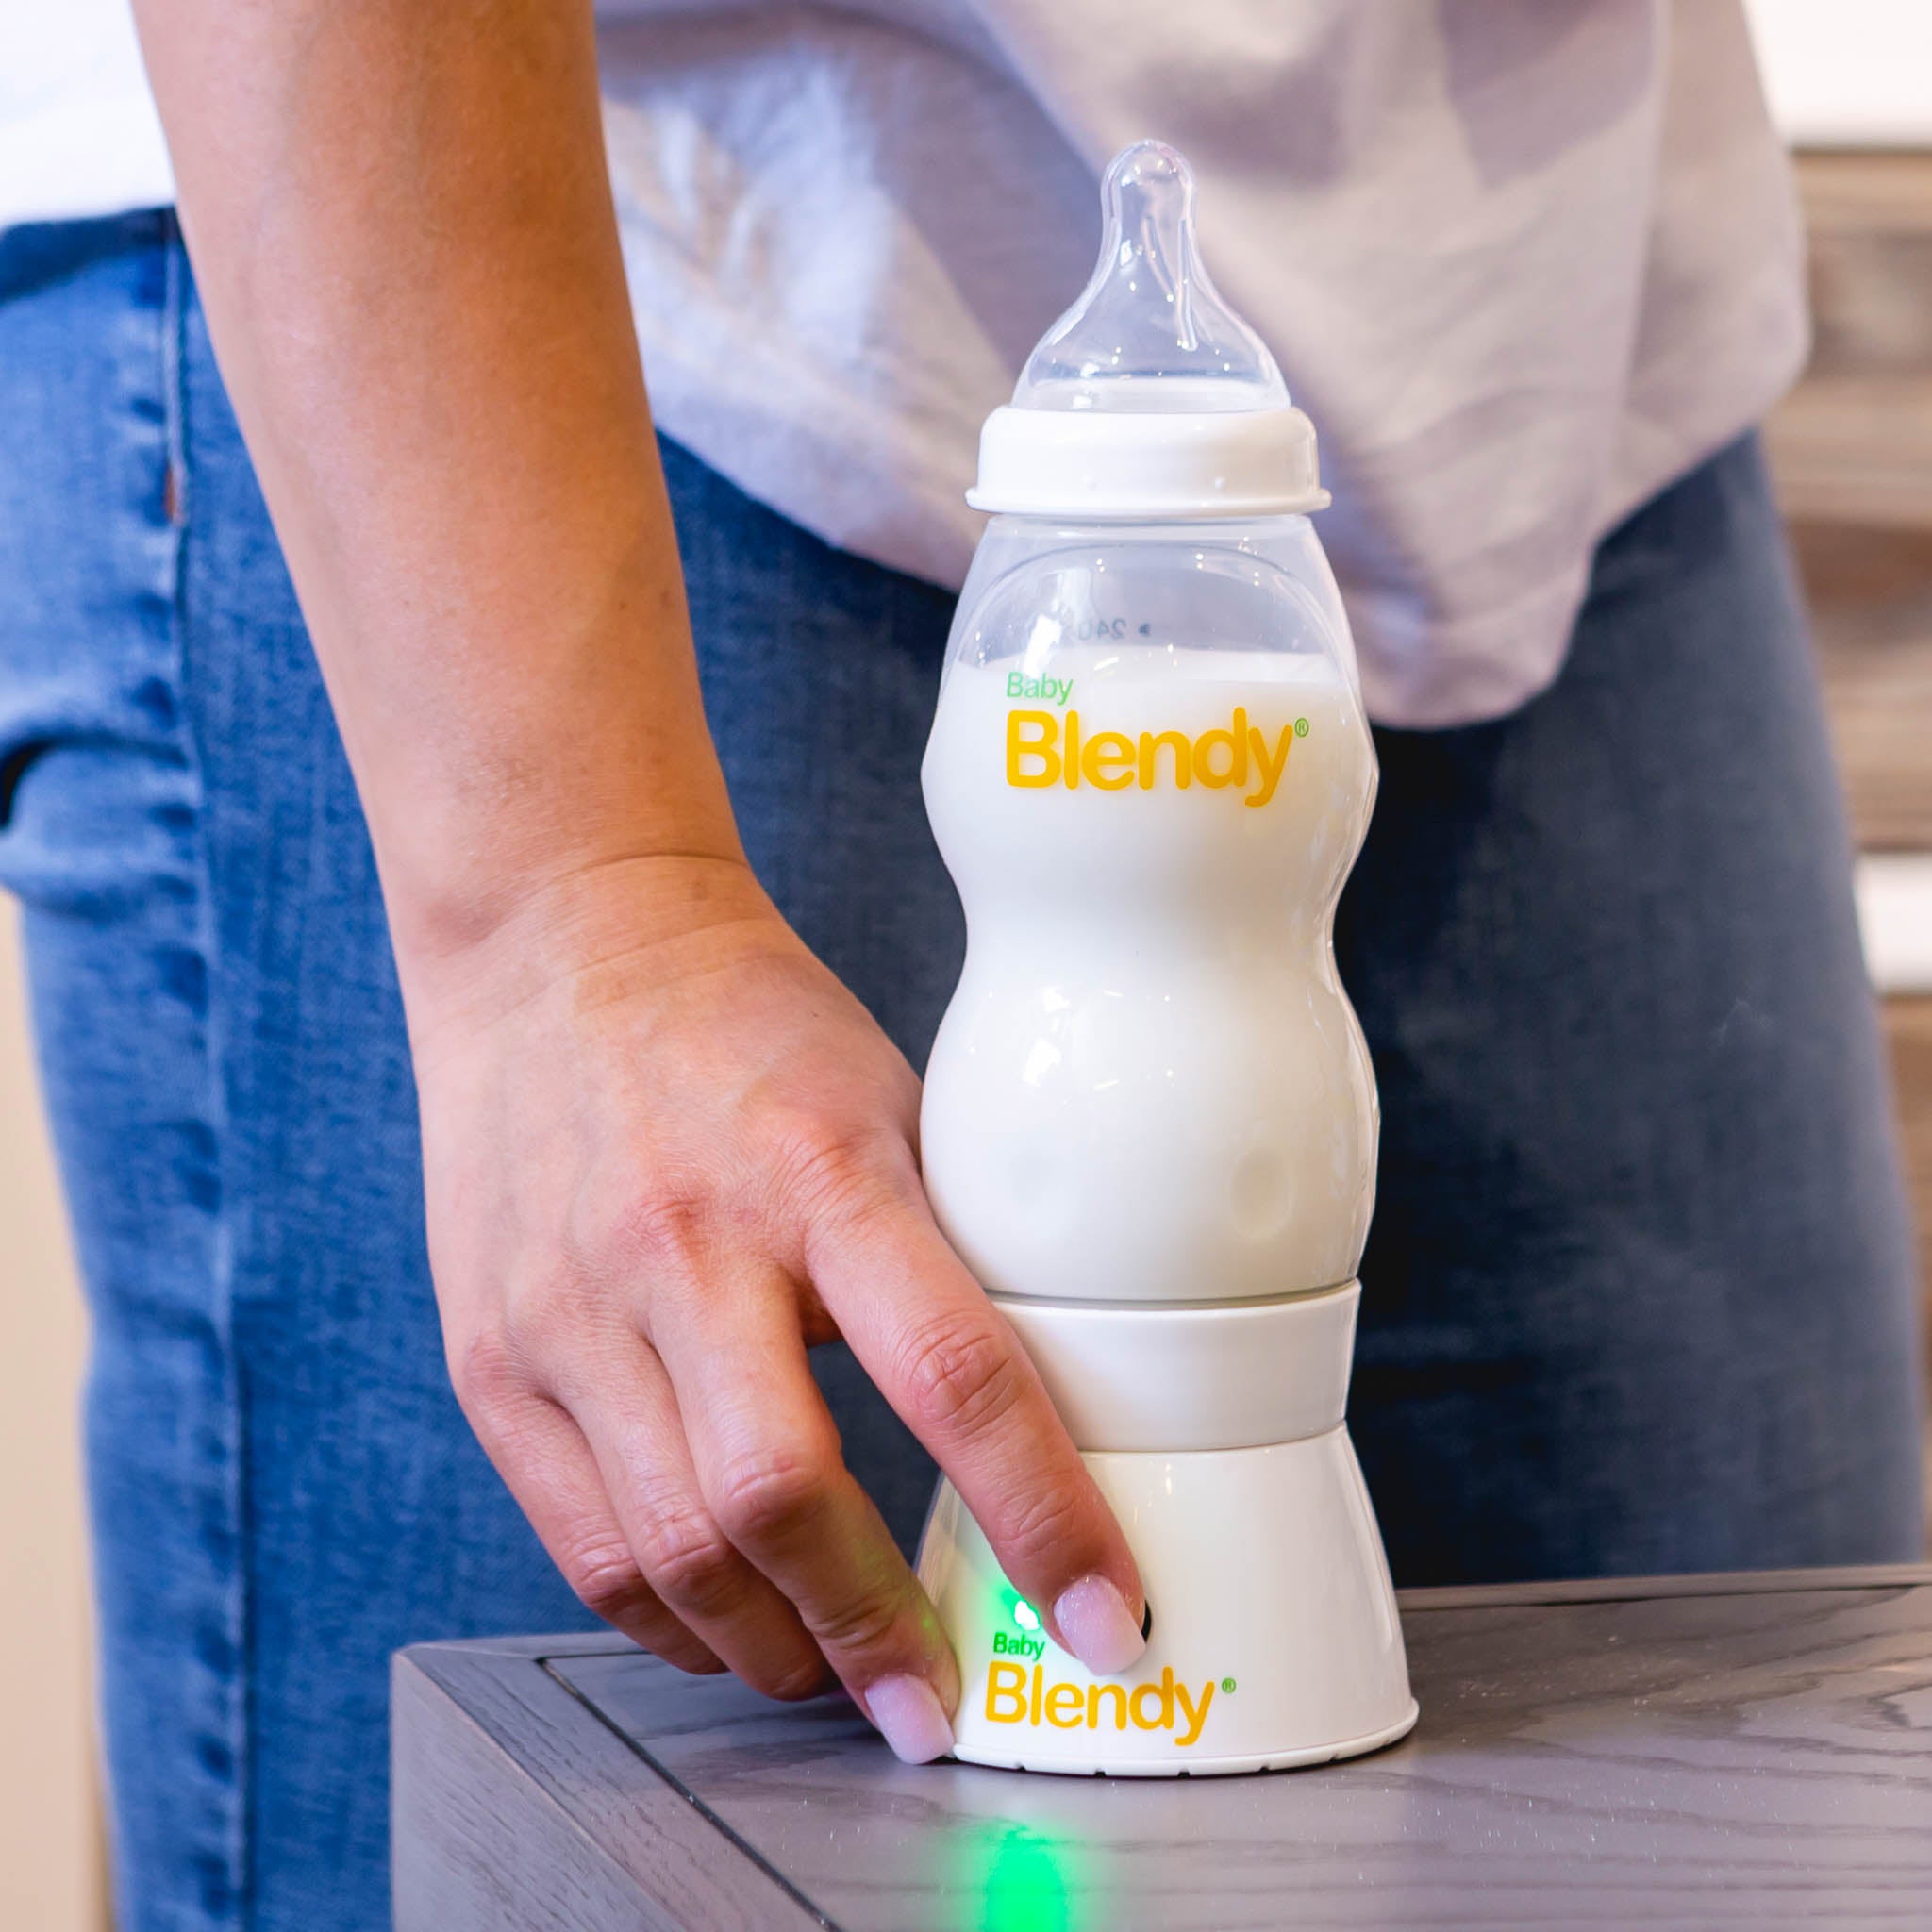 Baby Blendy - The Best Baby Bottle Blender, Anti-Colic Bottle Maker